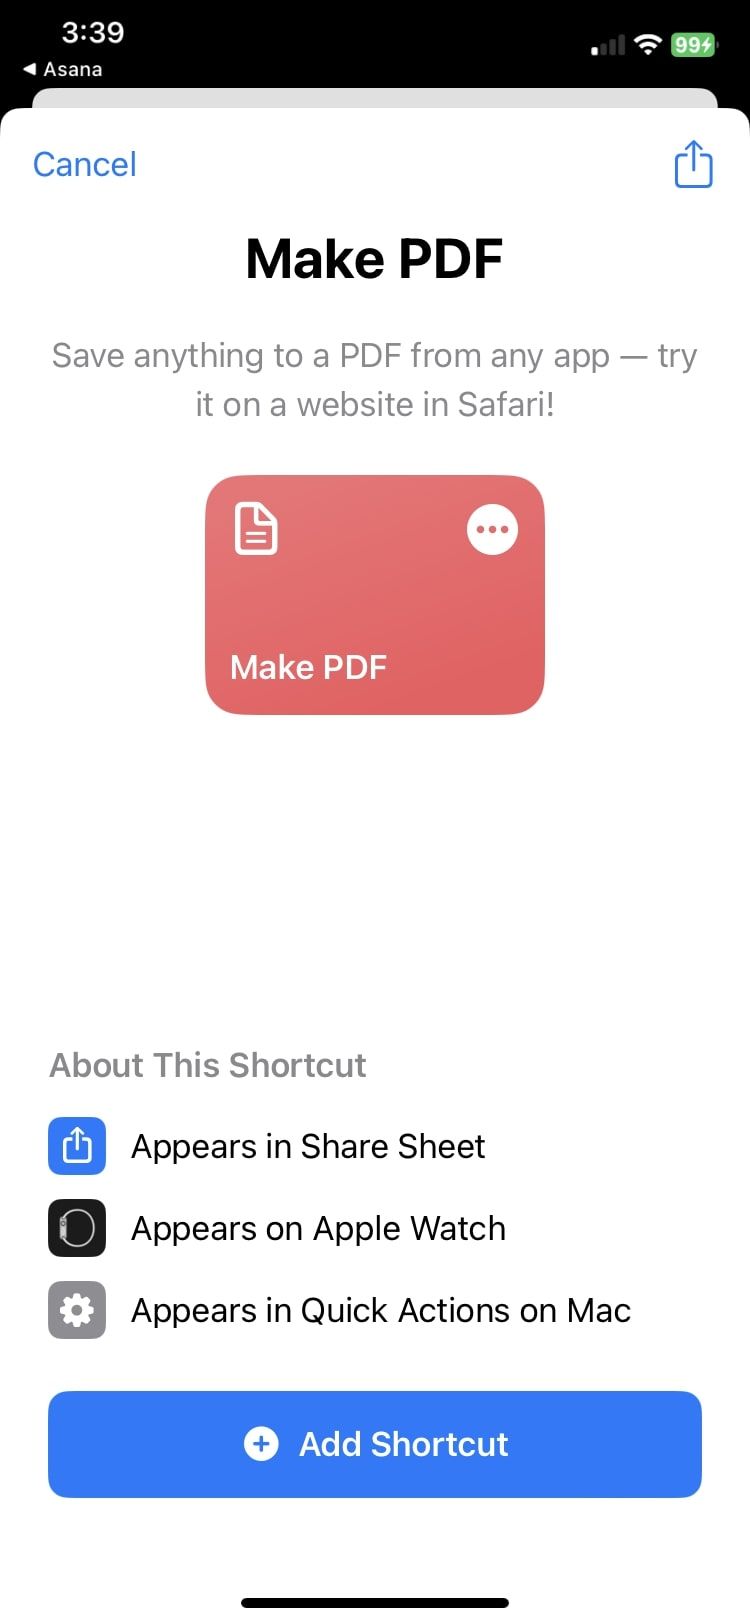 made PDF shortcut